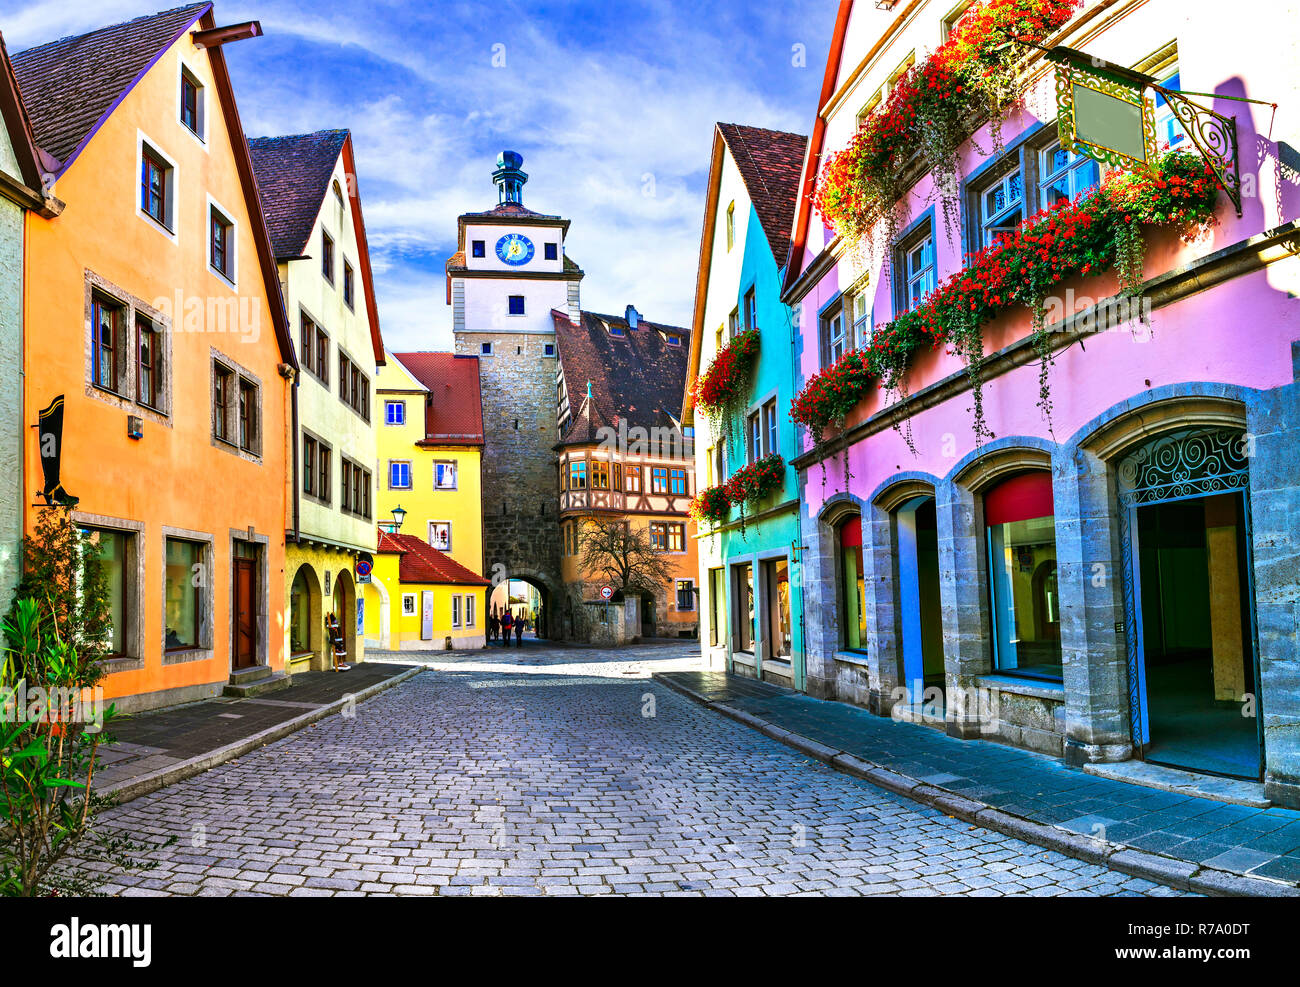 Traditionelle bunte Häuser in Rothenburg o.d. Tauber, Bayern, Deutschland. Stockfoto